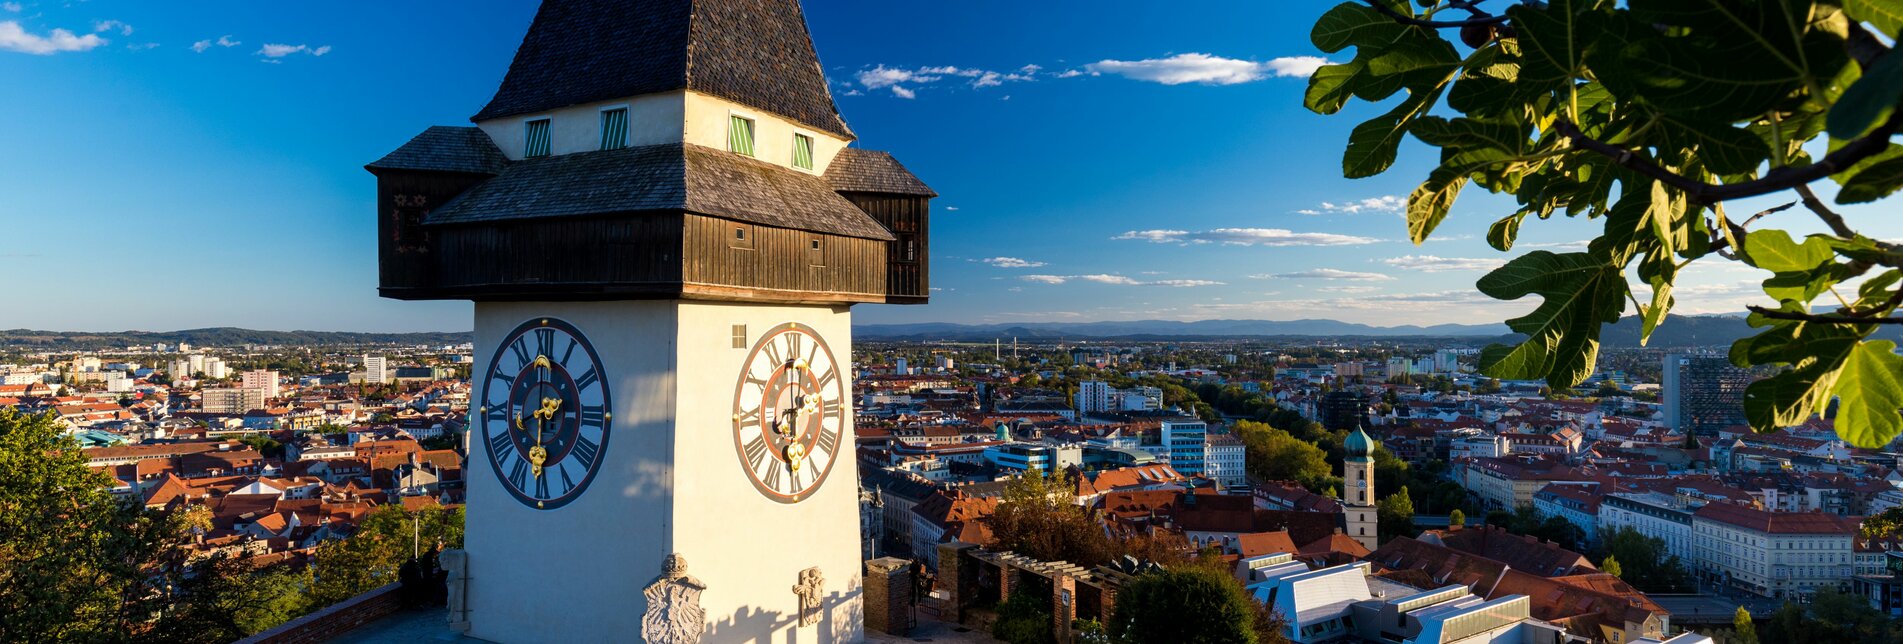 Blick vom Schlossberg mit dem Uhrturm im Vordergrund auf die Dächer von Graz | © Graz Tourismus